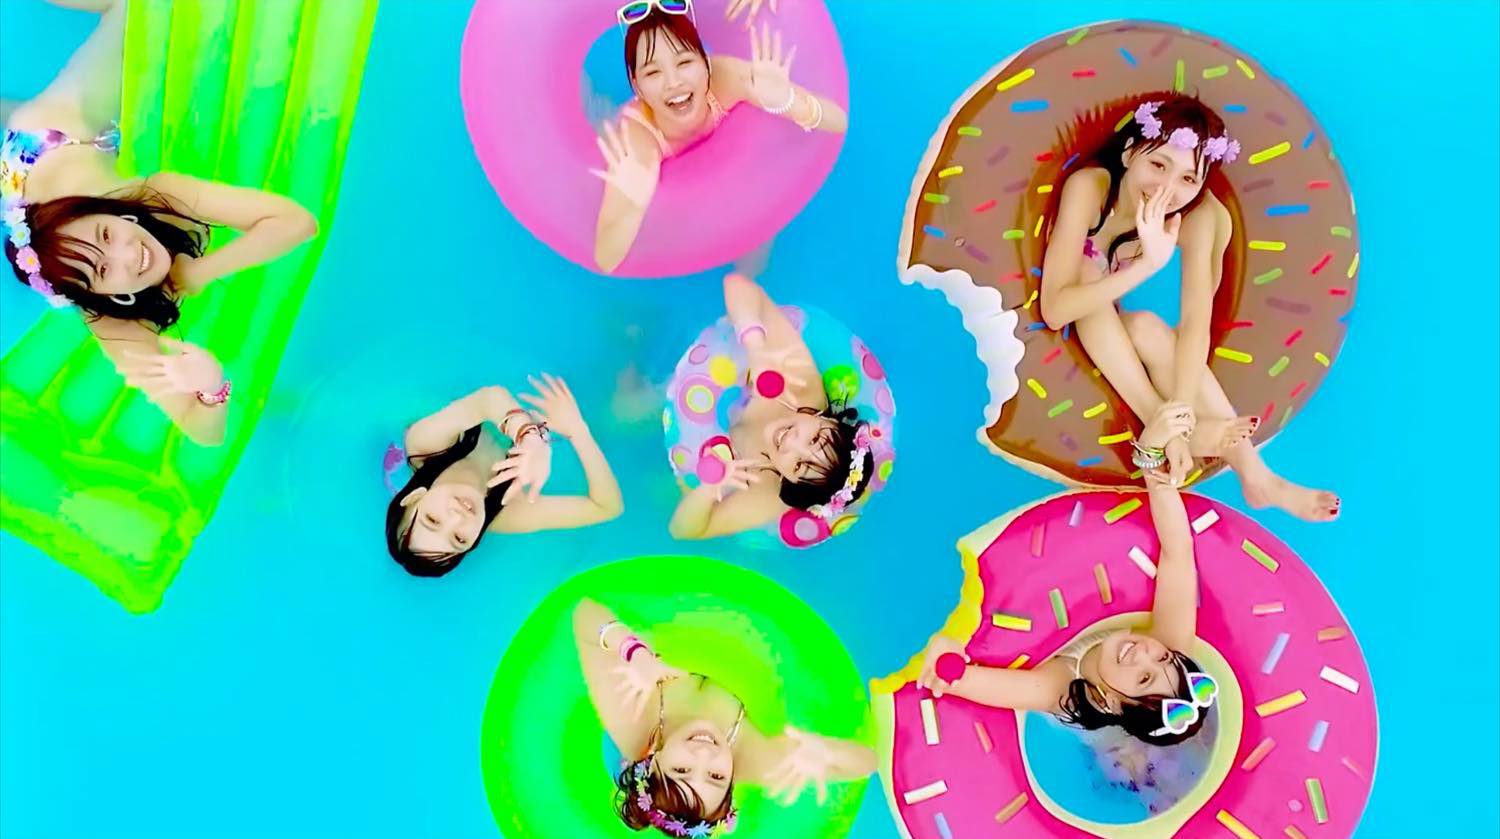 Ocean, Pool, Fireworks, and Lovely☆DOLL! MV For “Mera Mera Summer Time” Revealed!